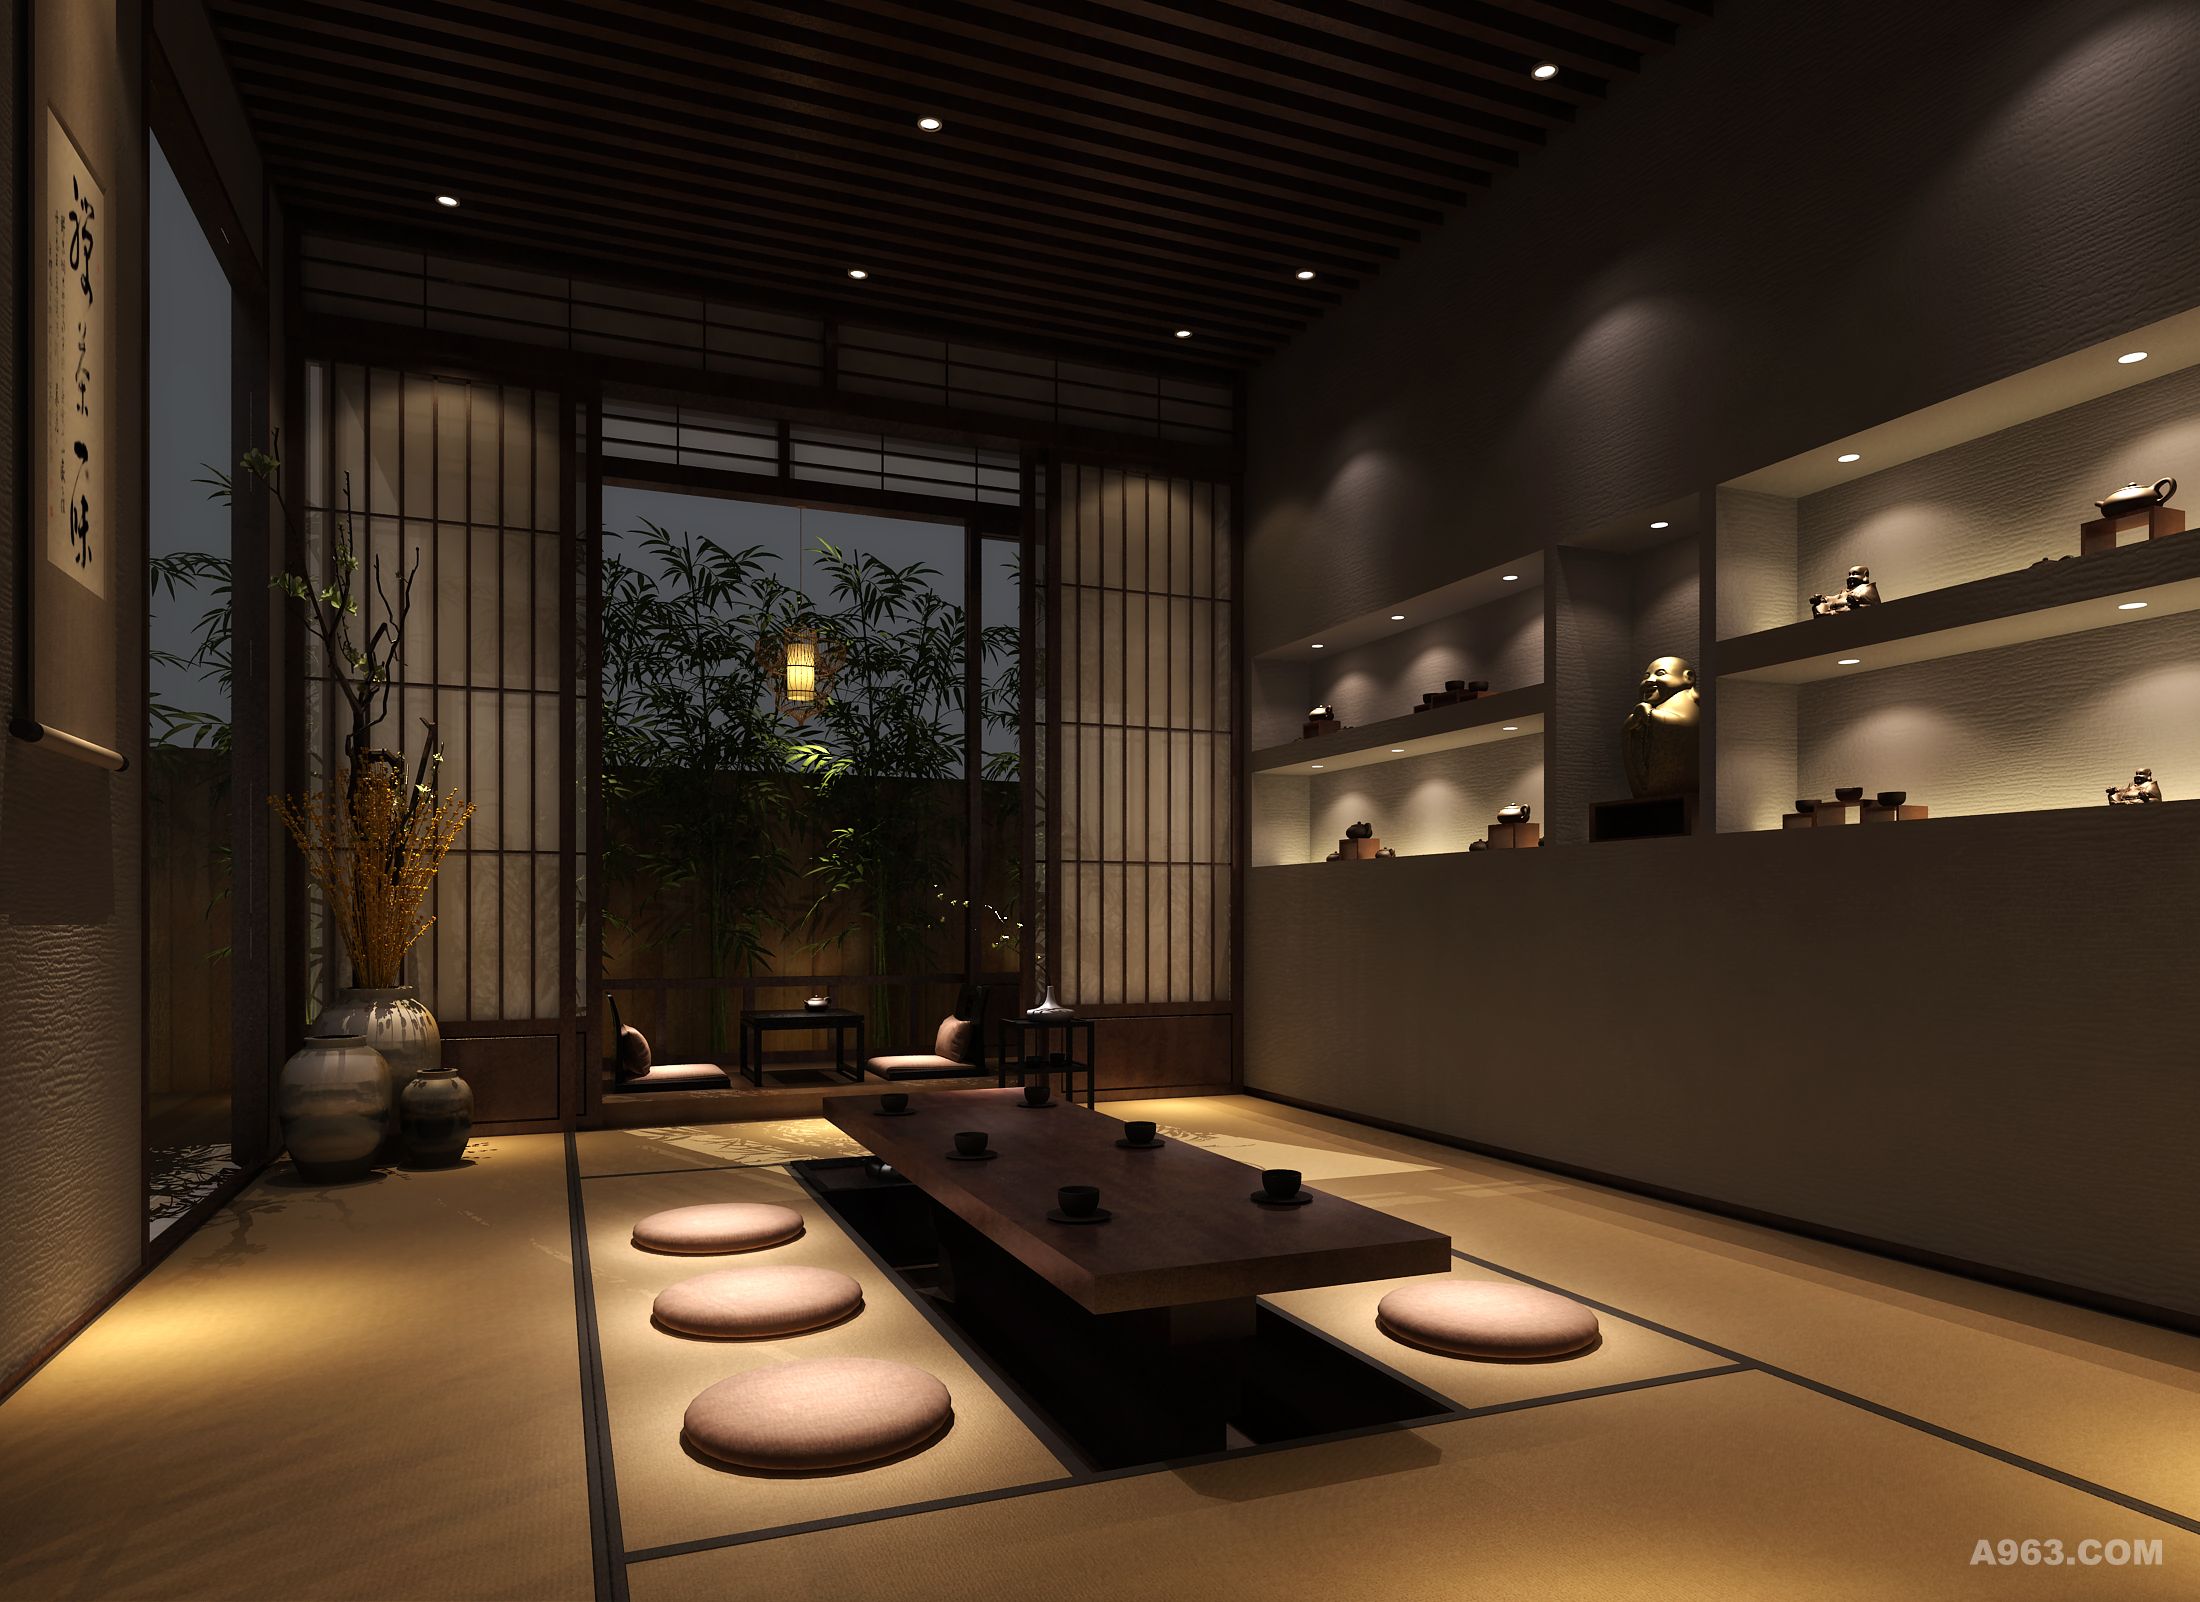 北京中棠设计 设计风格:日式 在壹个露台安置壹个品茶静心的茶室,哪怕